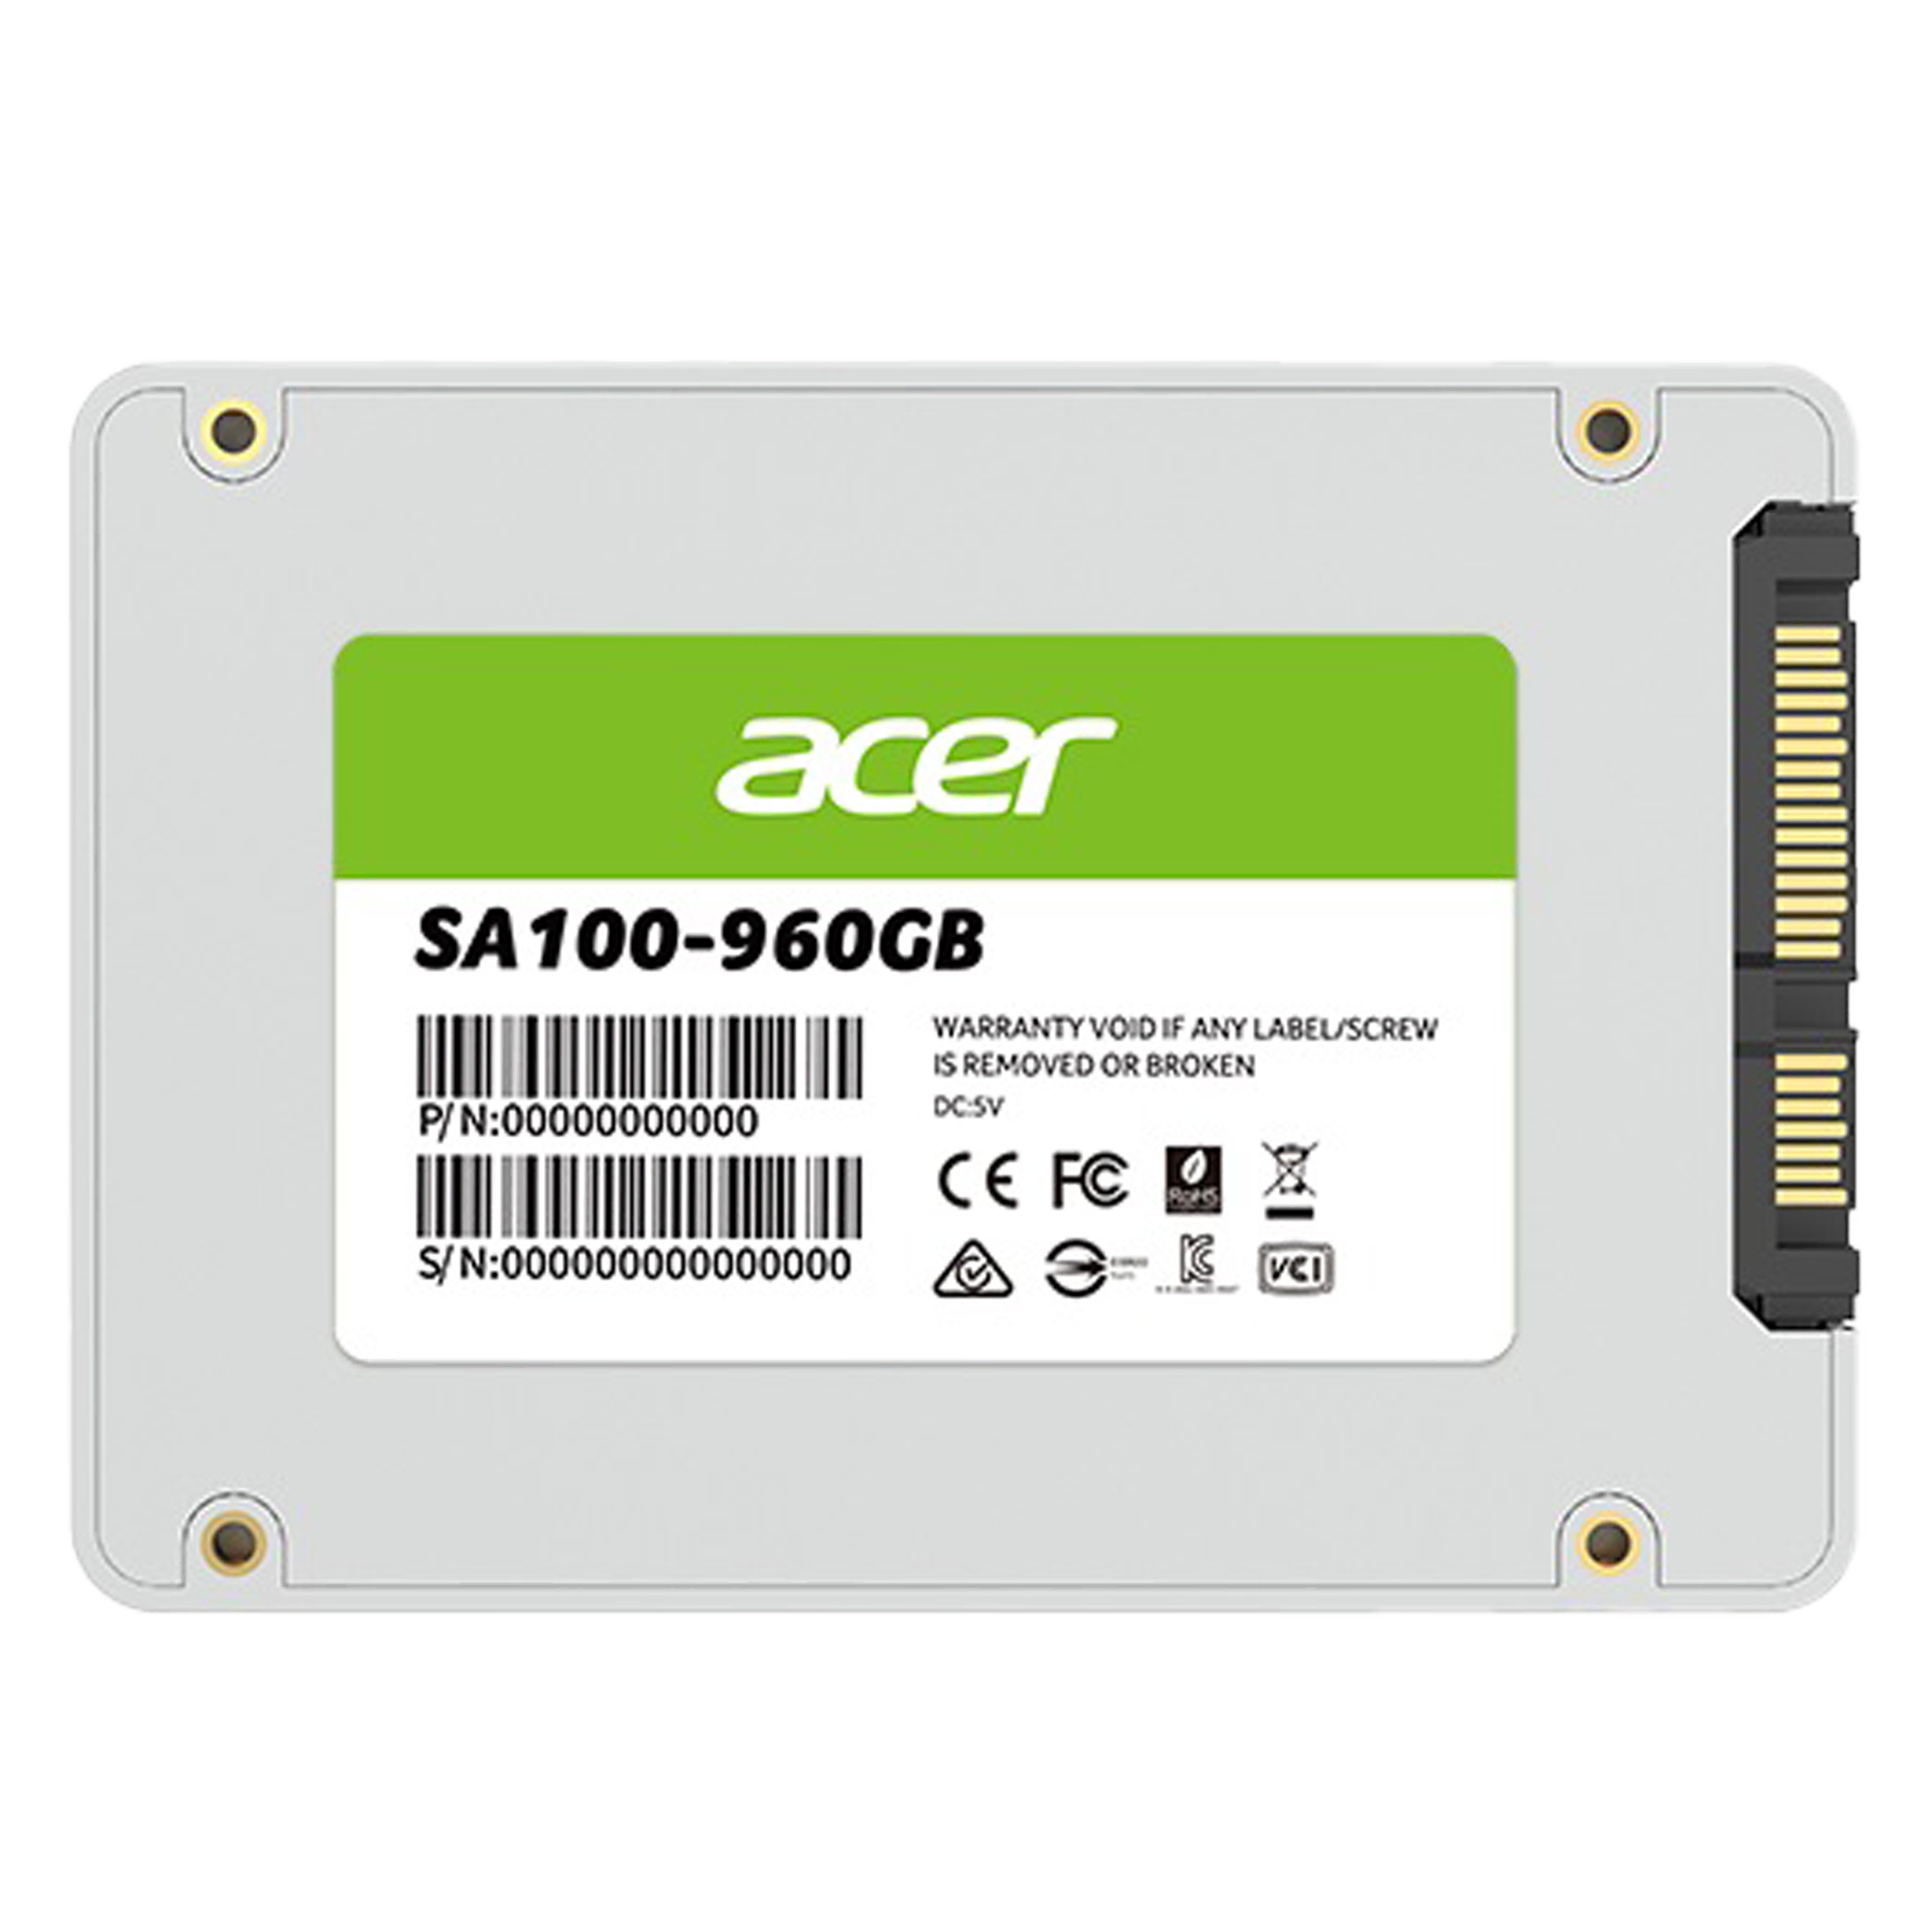 ACER SSD SA100 2.5'' 960GB Bilgisayar Çevre Birimleri